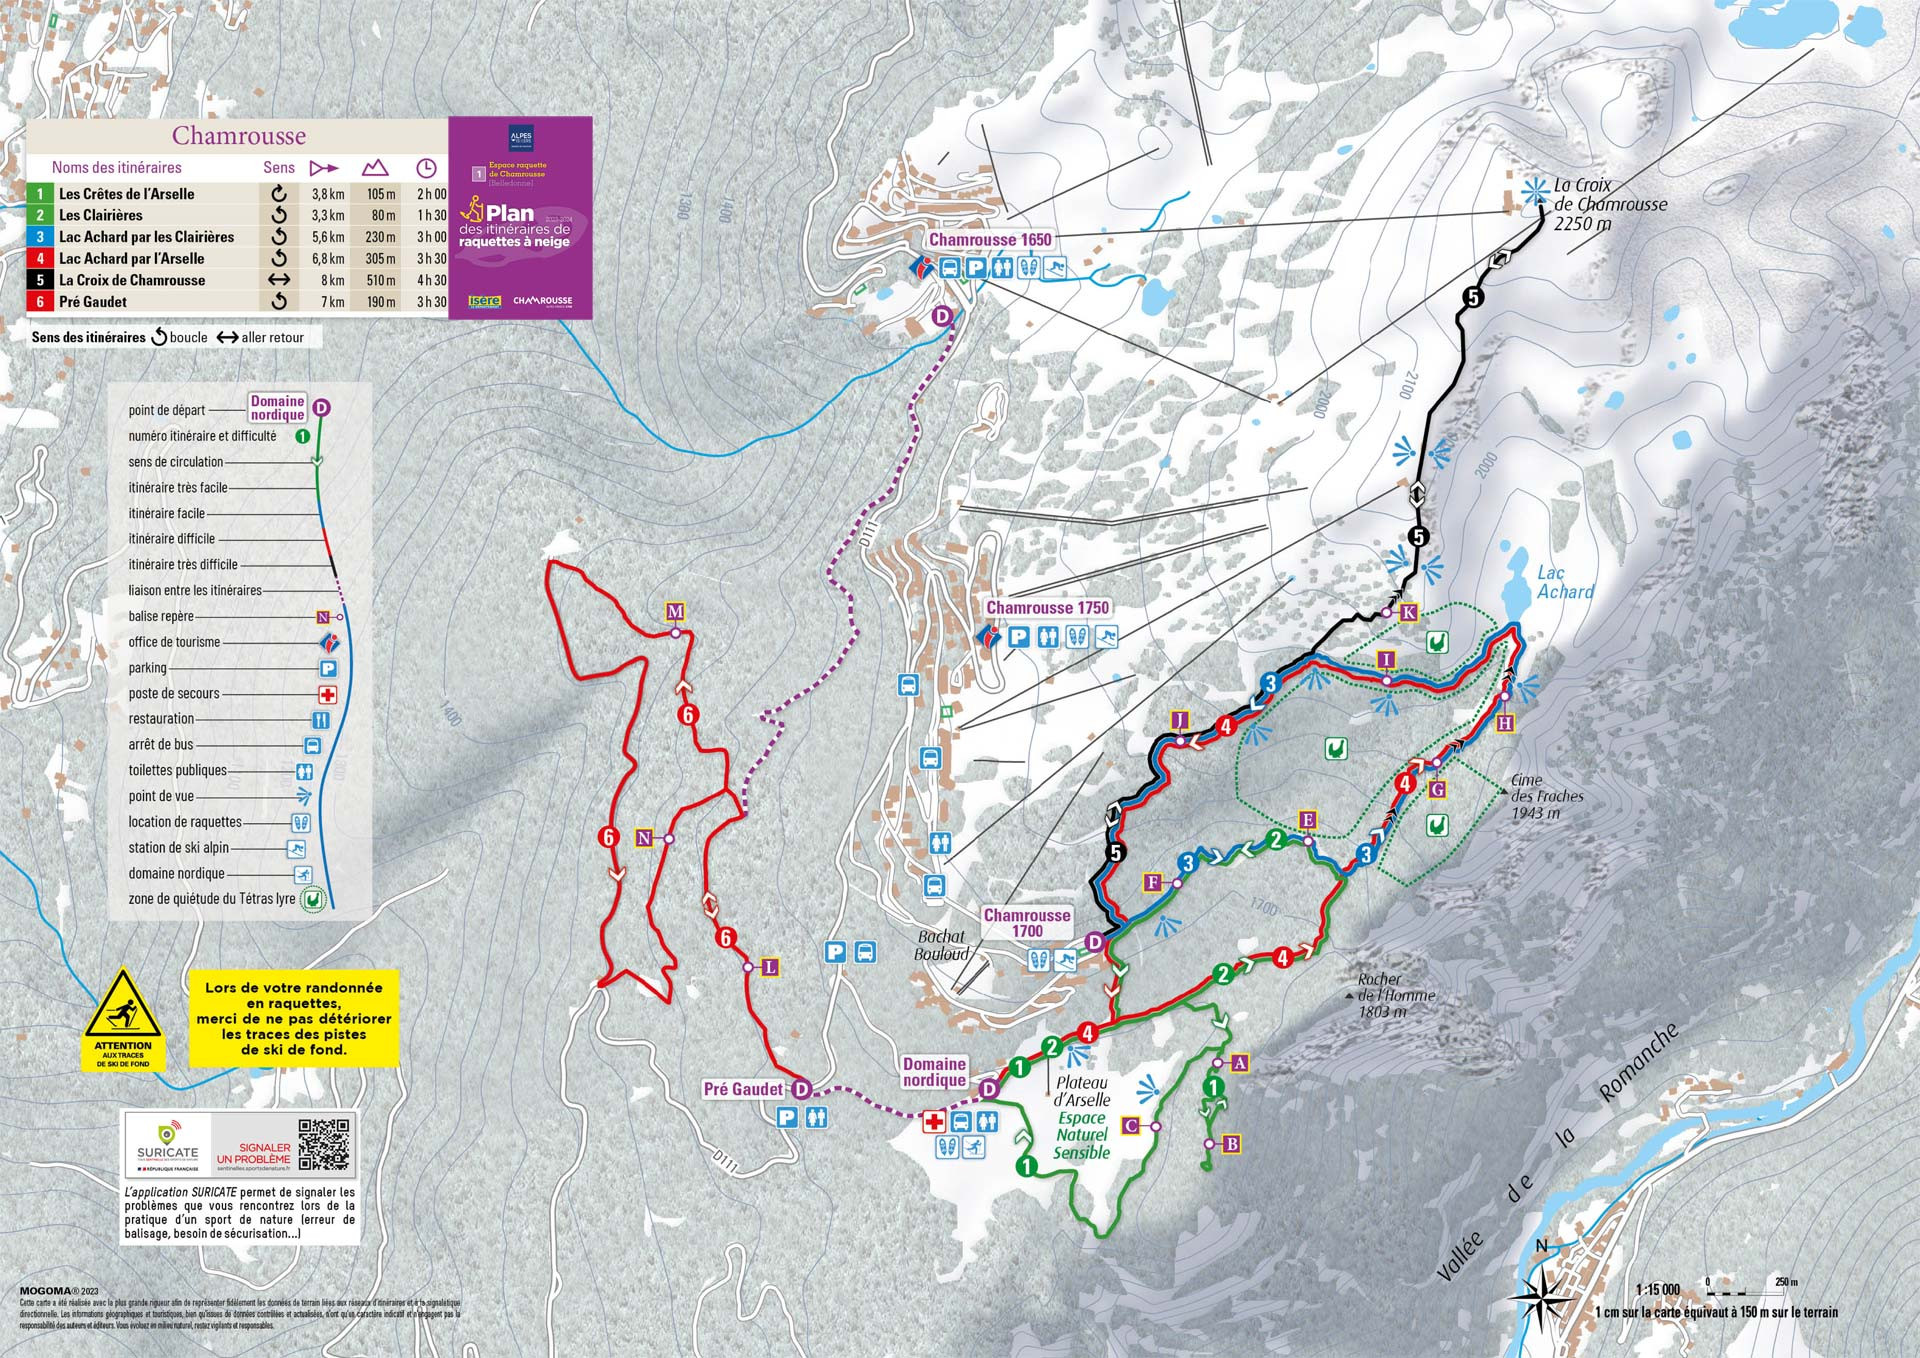 Chamrousse plan itinéraire sentier balade raquette neige domaine nordique plateau arselle 1600 station ski montagne grenoble isère alpes france